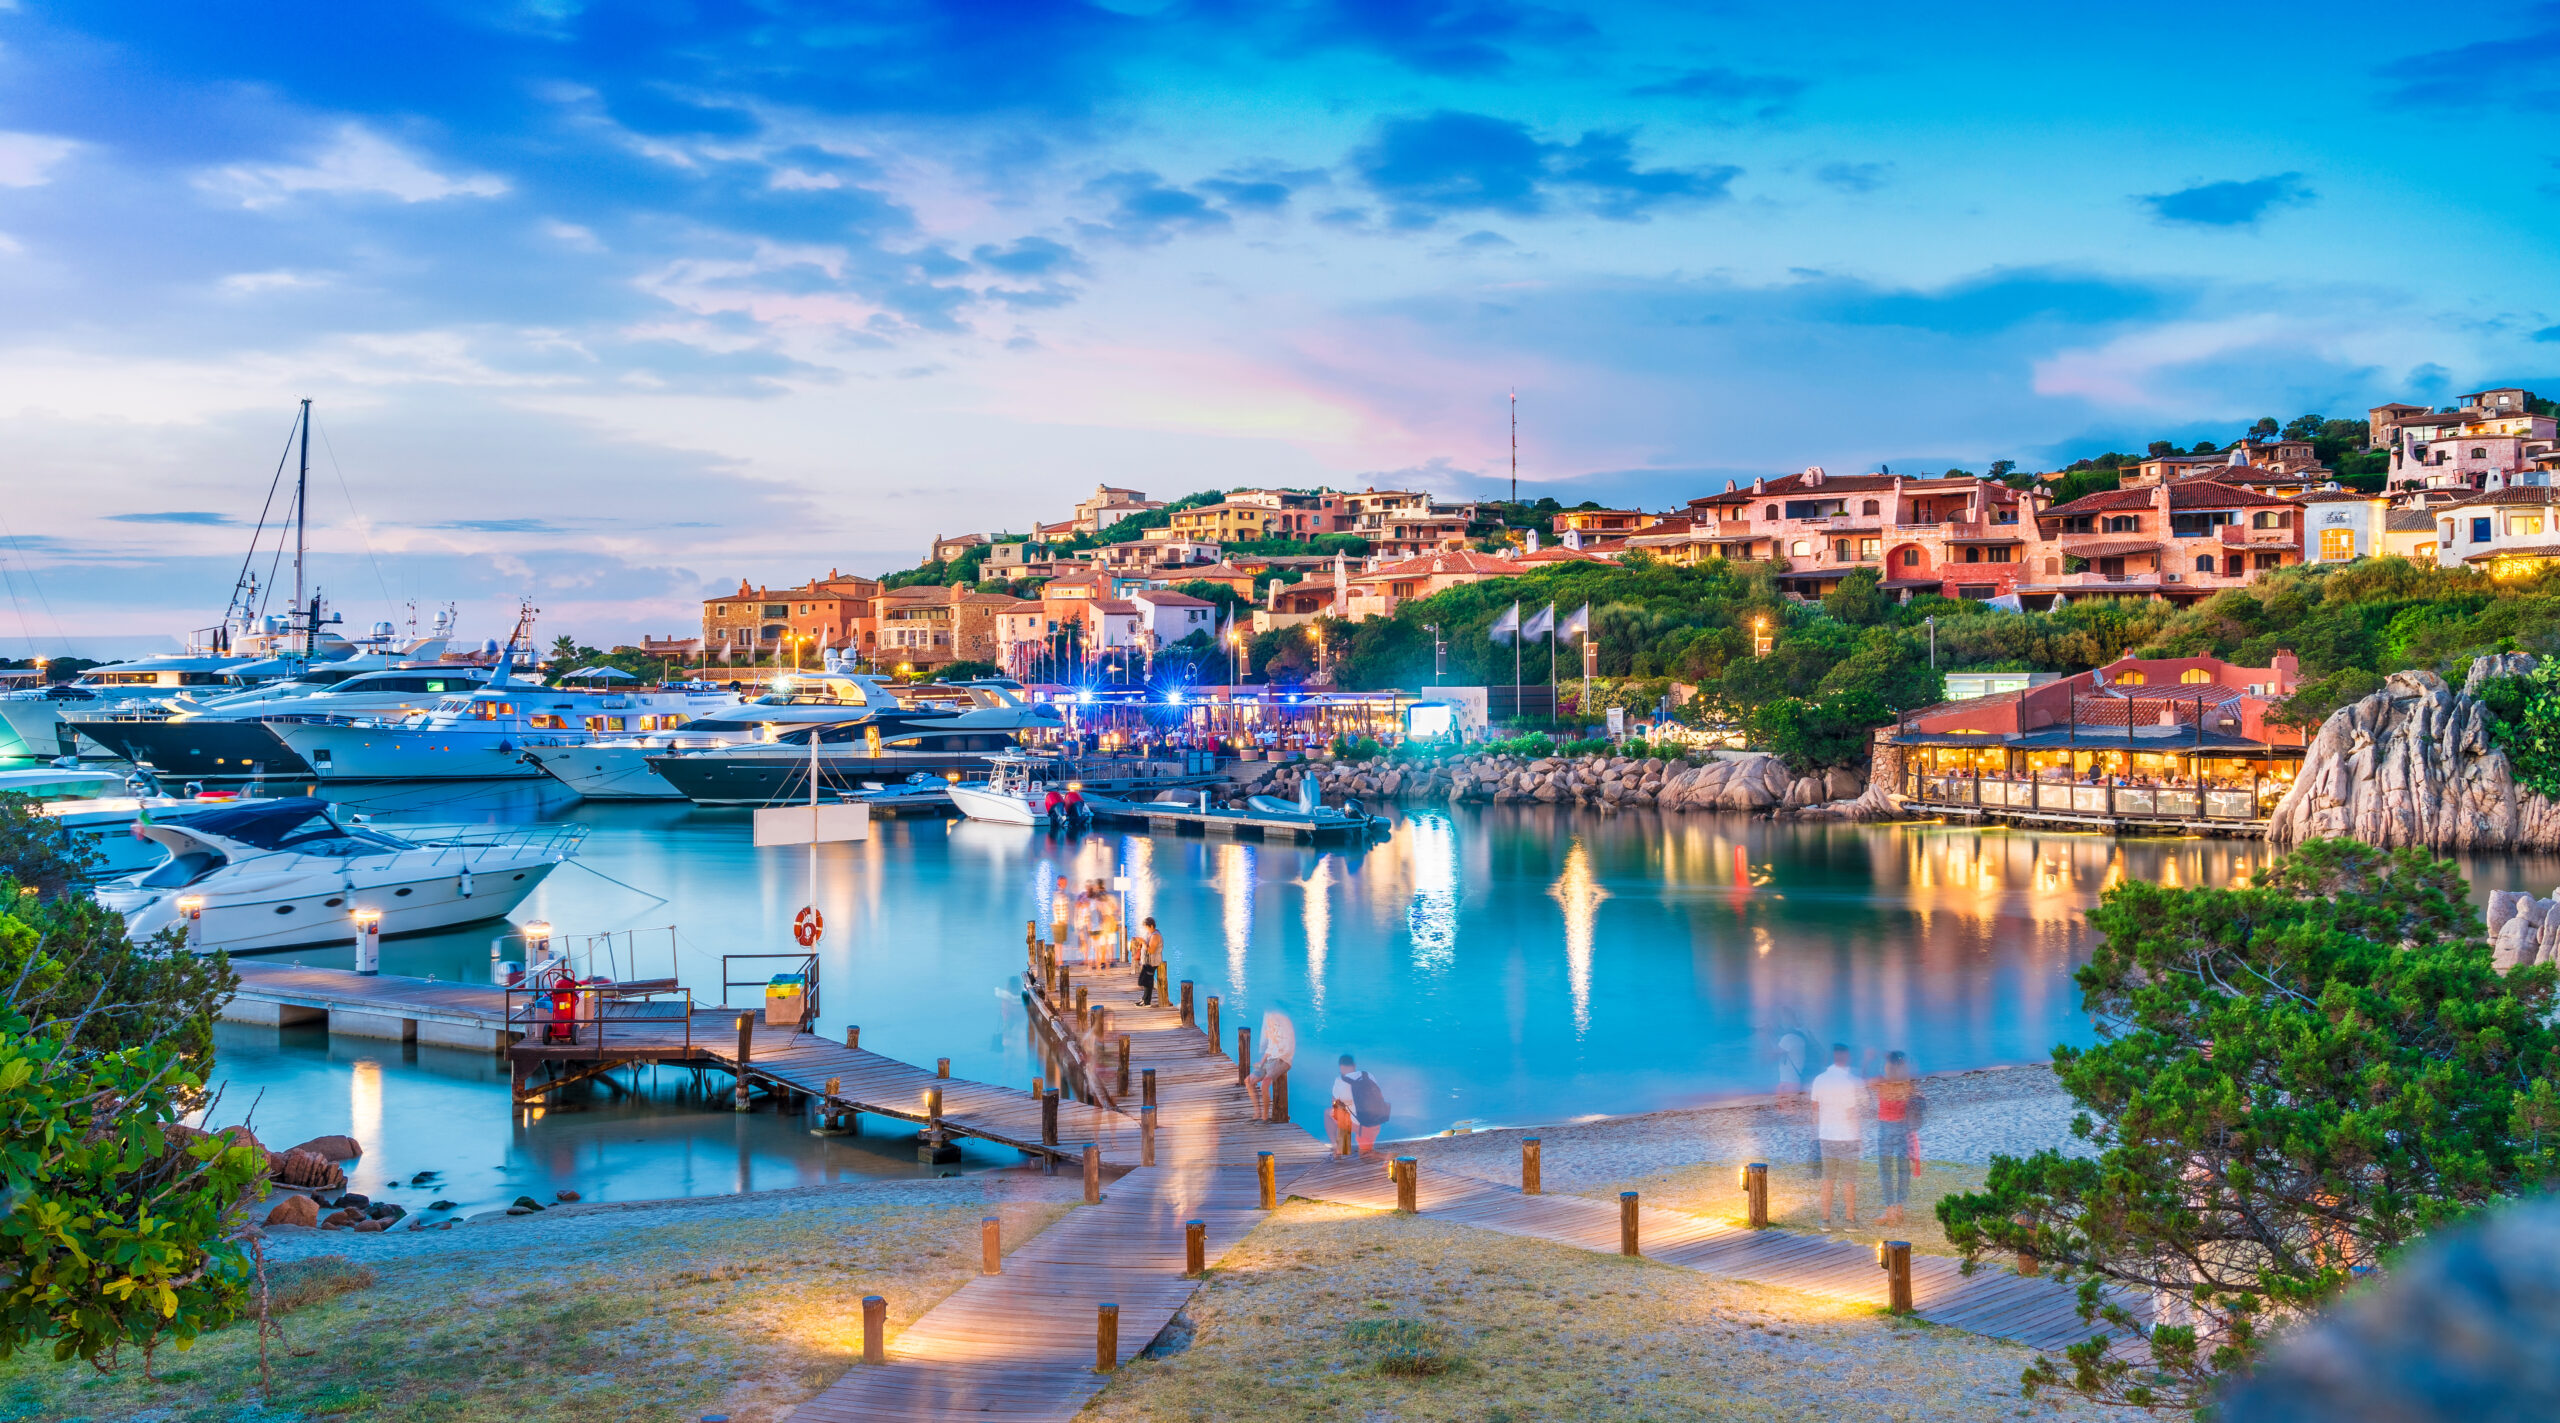 Sardinien Urlaub buchen: Erleben Sie unvergessliche Ferien auf dieser traumhaften Insel